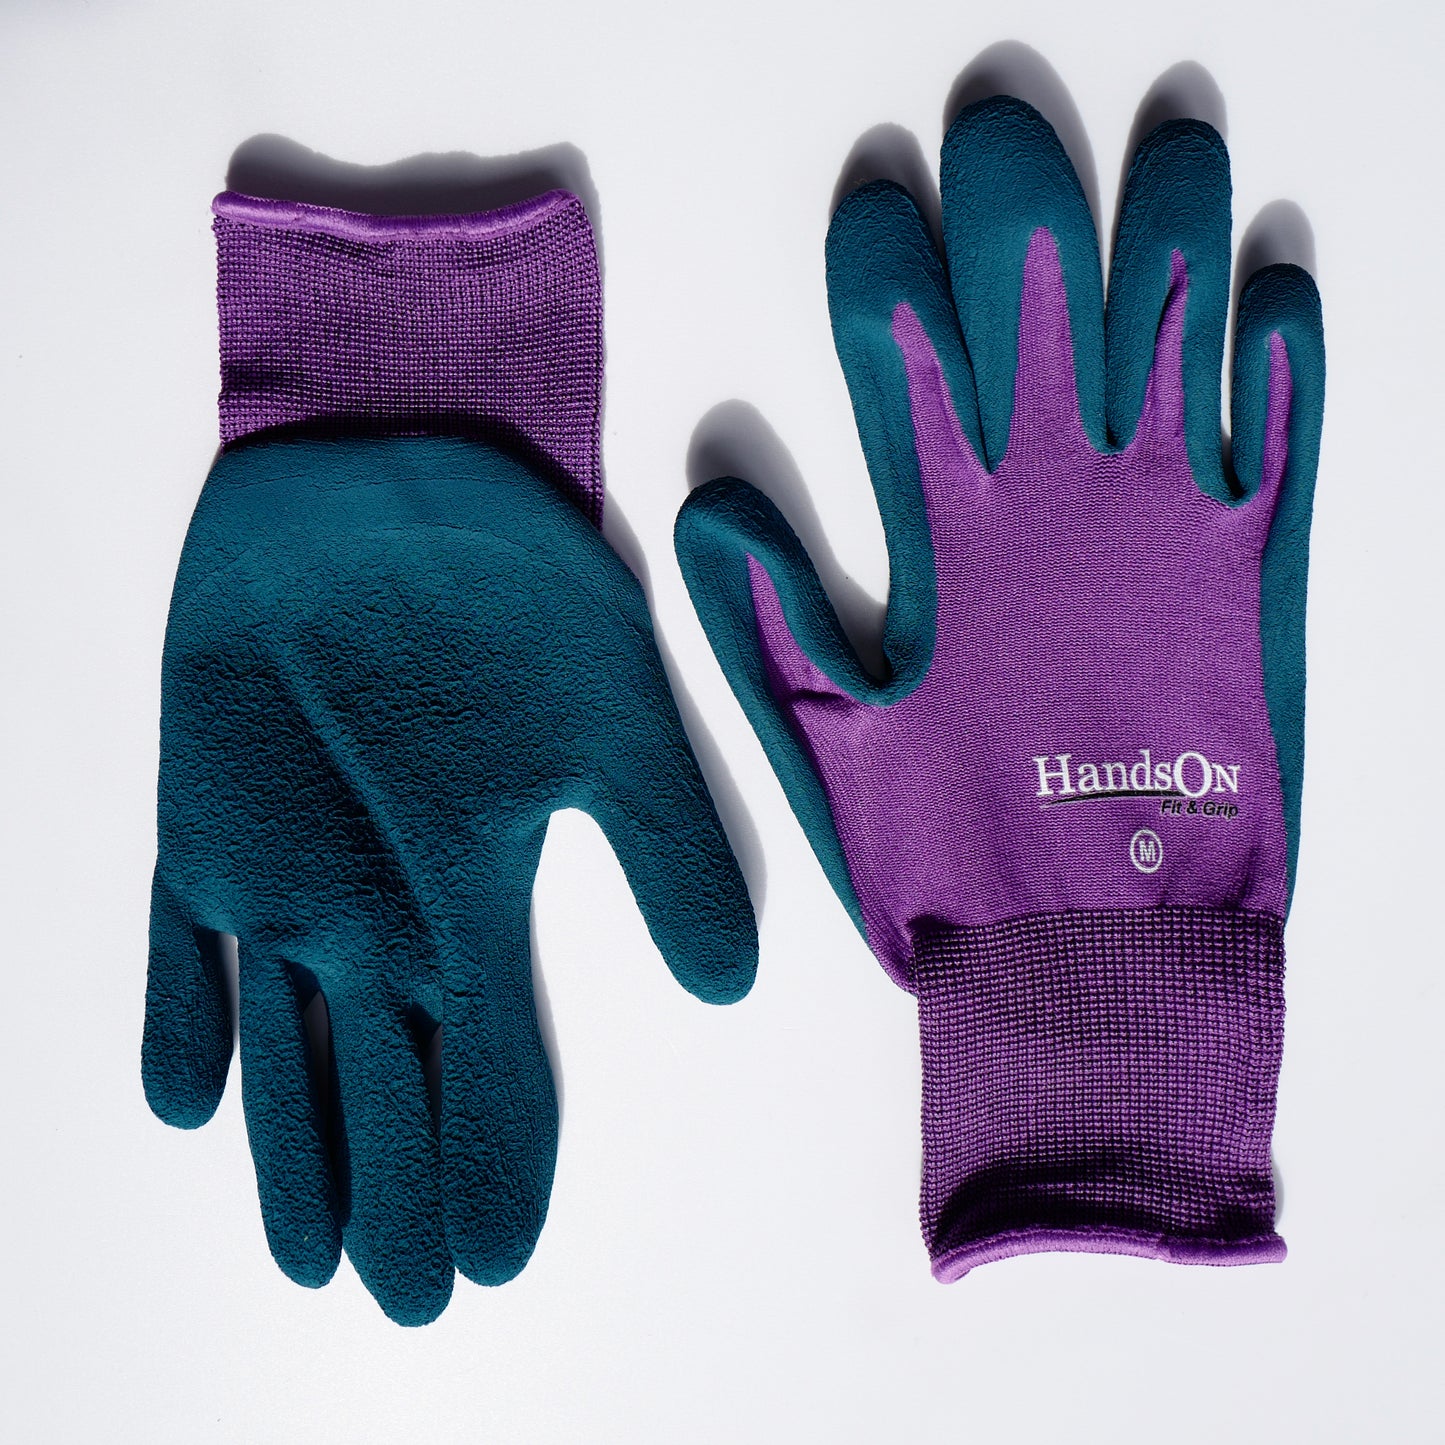 HandsOn™ Gardening Gloves